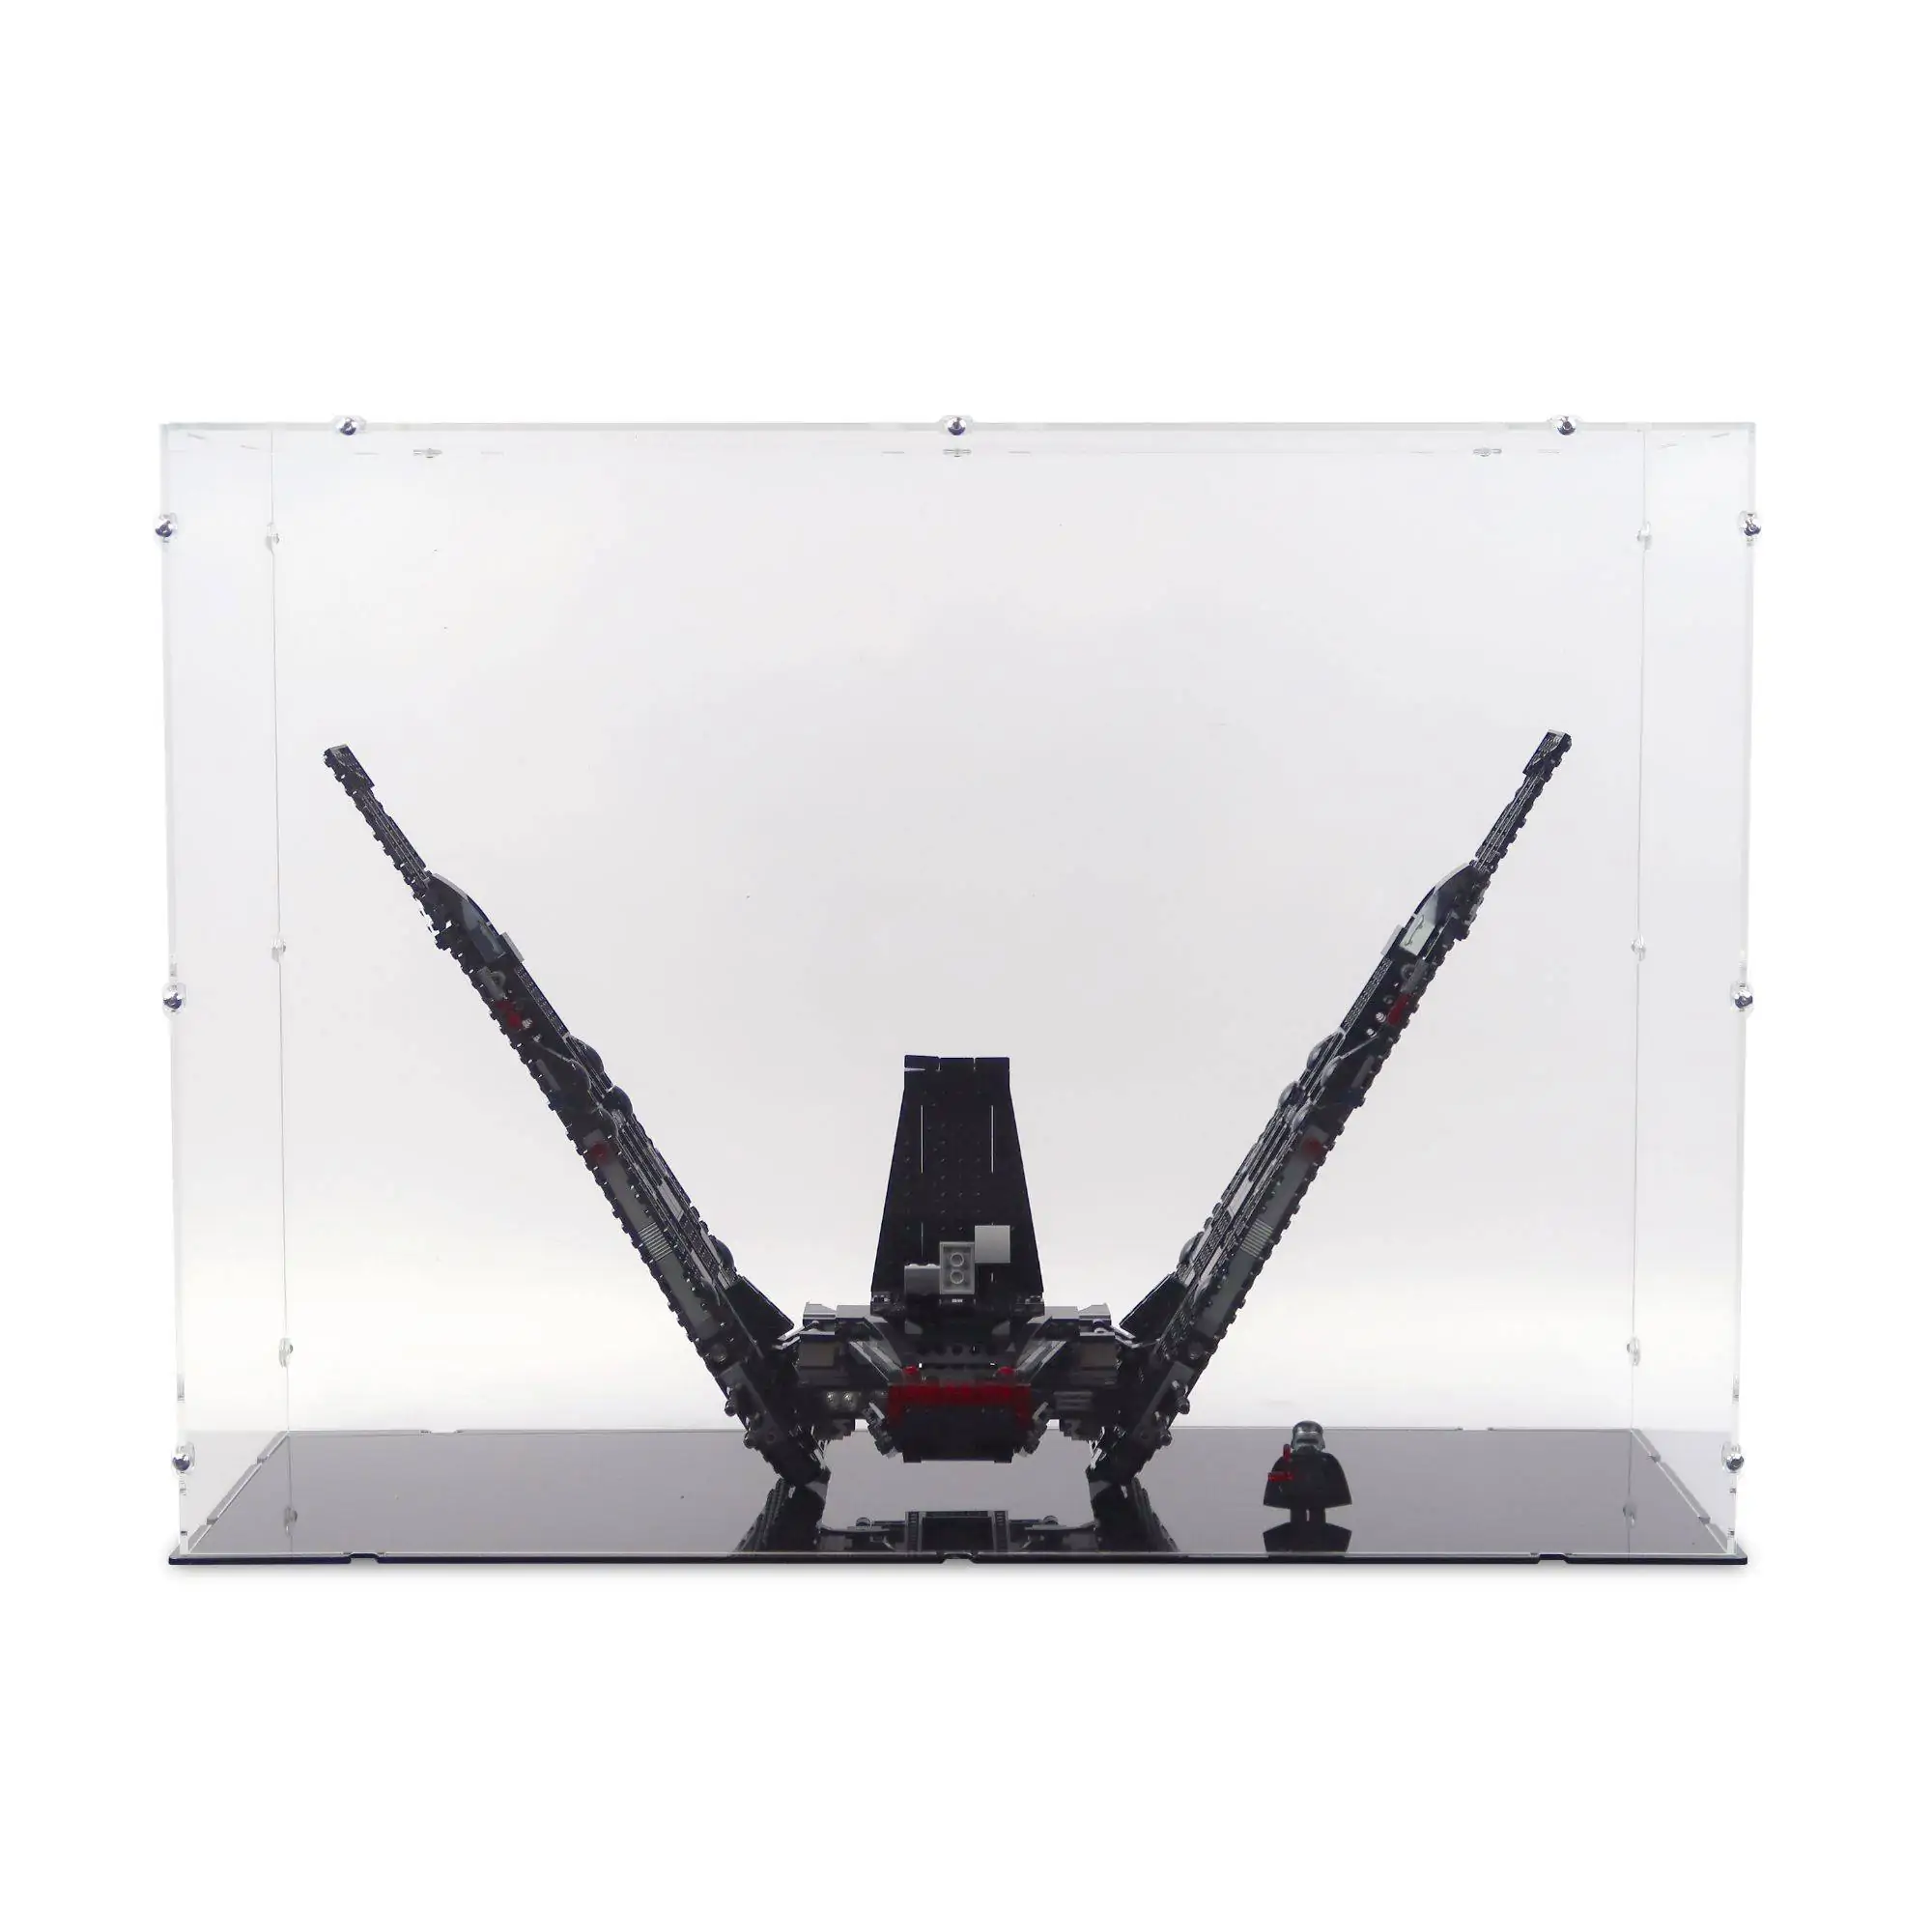 Acrylic Display & Stand for LEGO Kylo Ren Shuttle | iDisplayit | iDisplayit